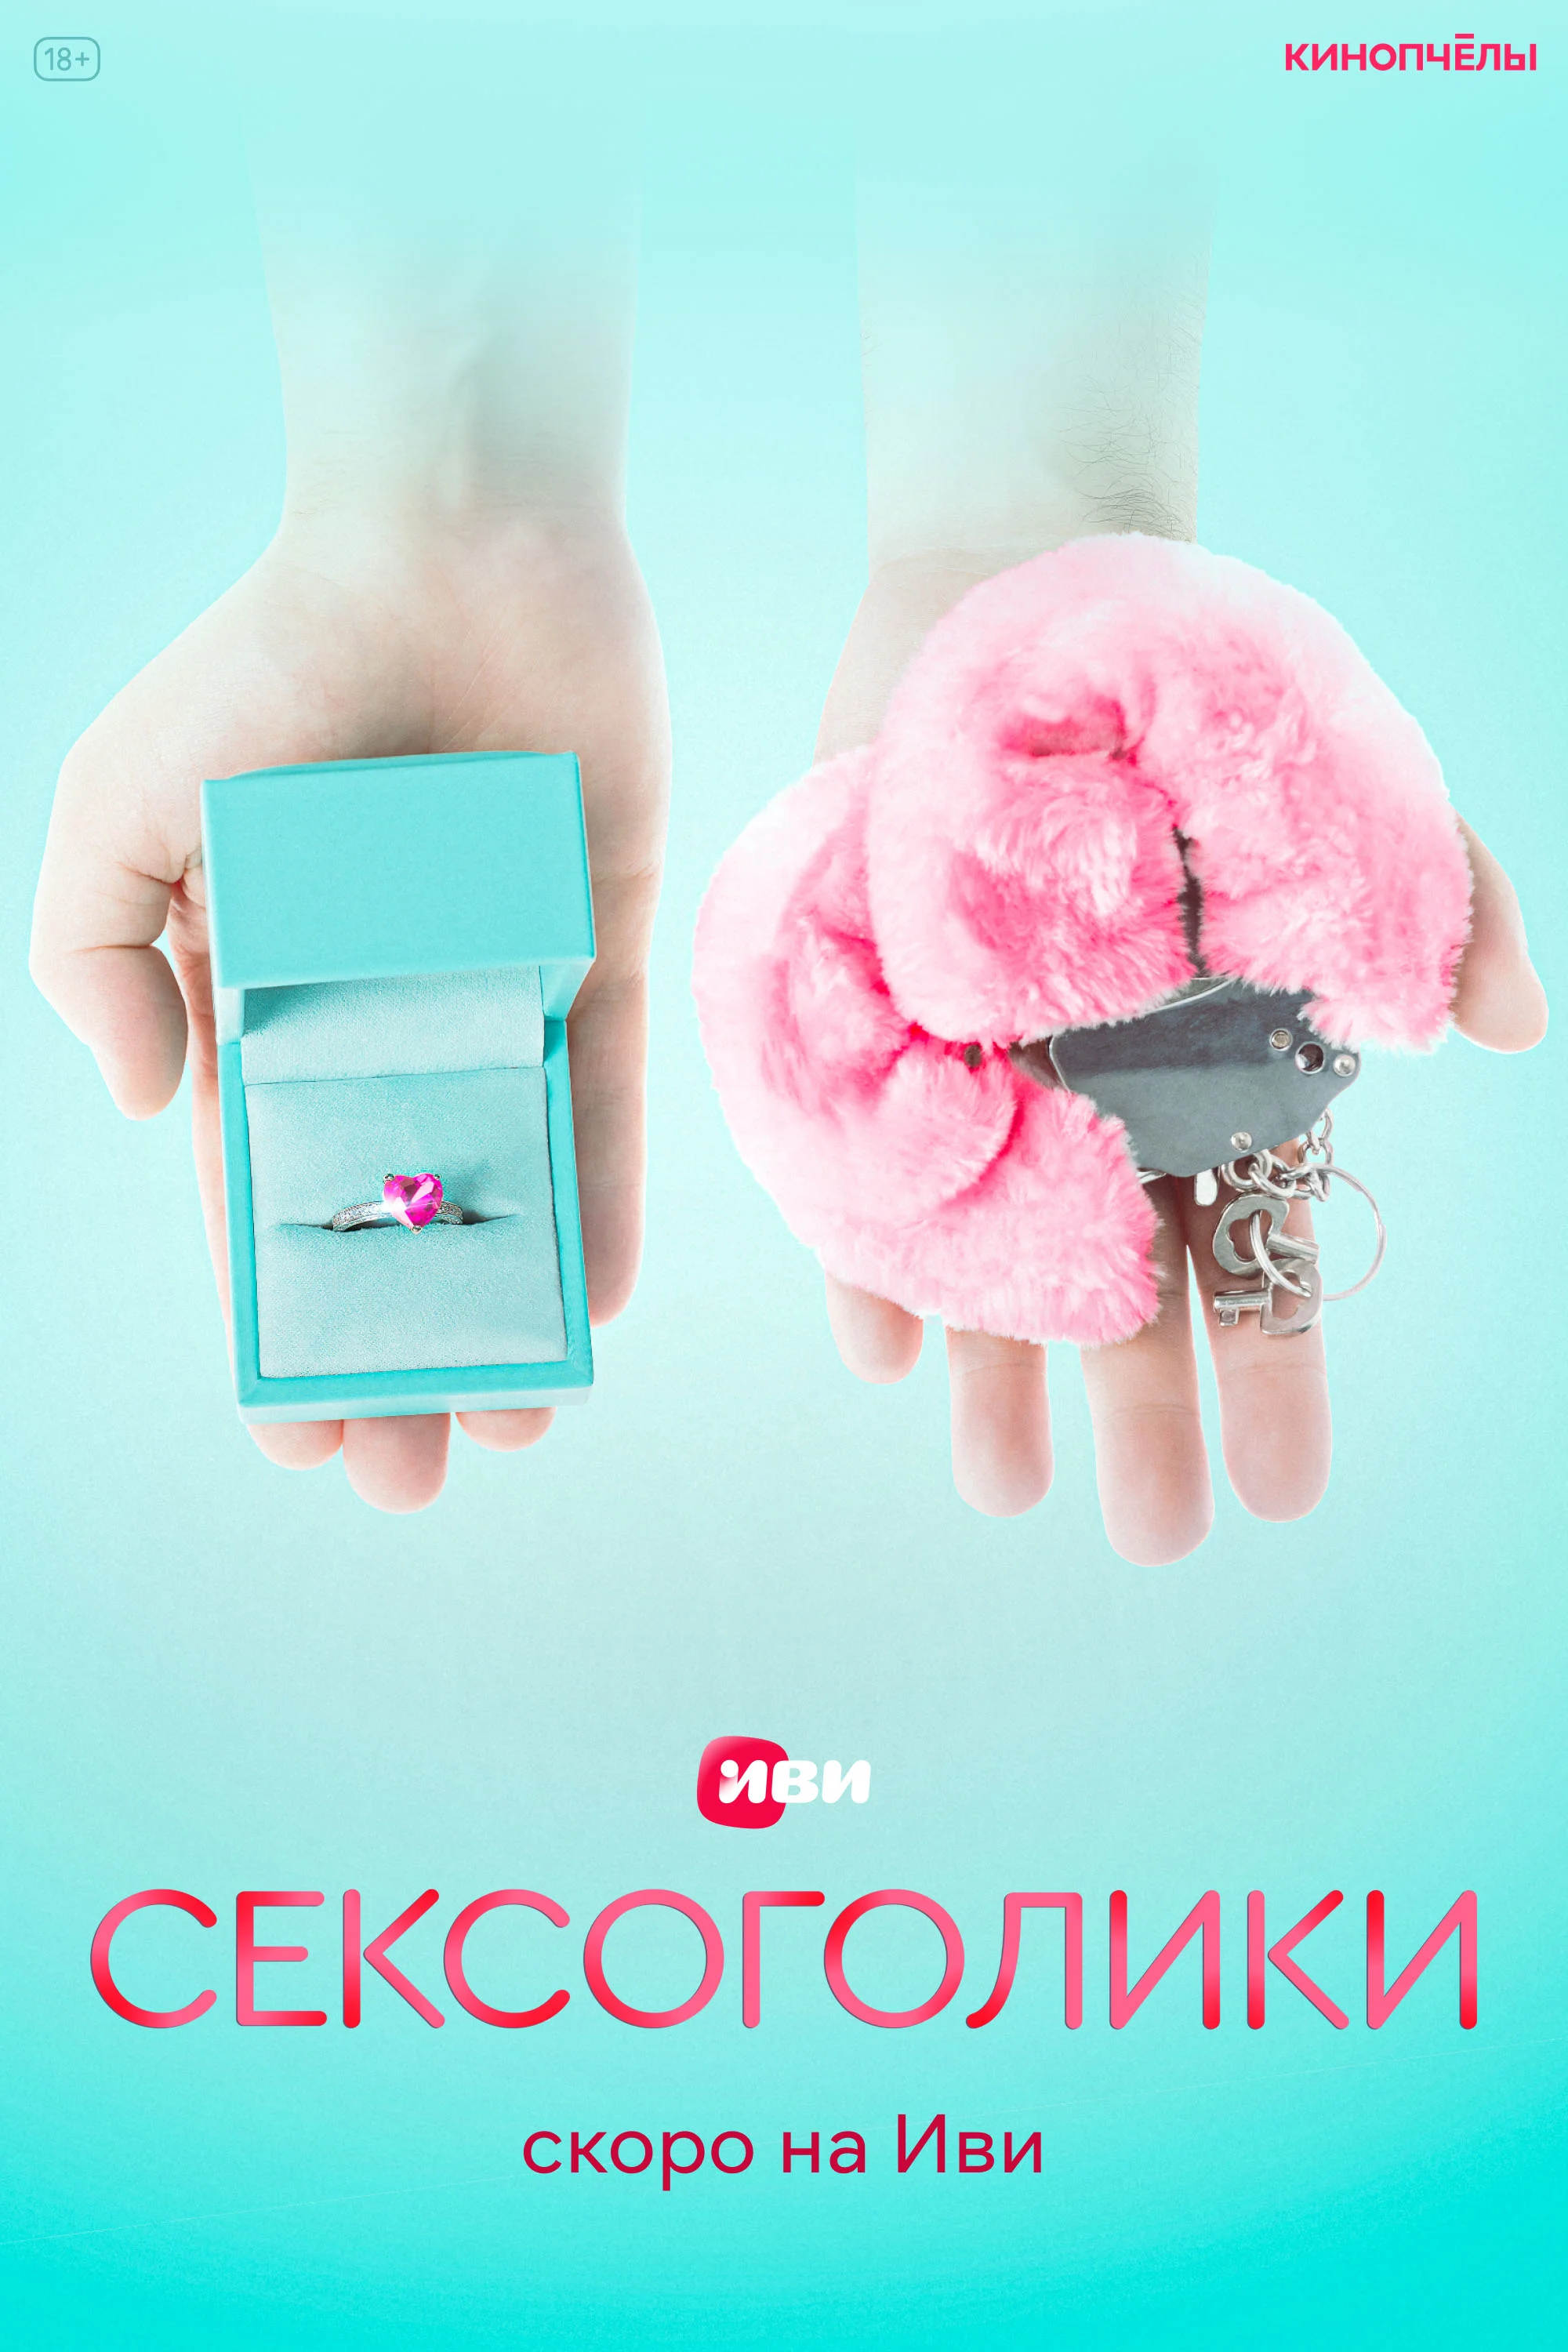 «Иви» объявил об окончании съёмок сериала «Сексоголики» с Дарьей Мельниковой - фото 1